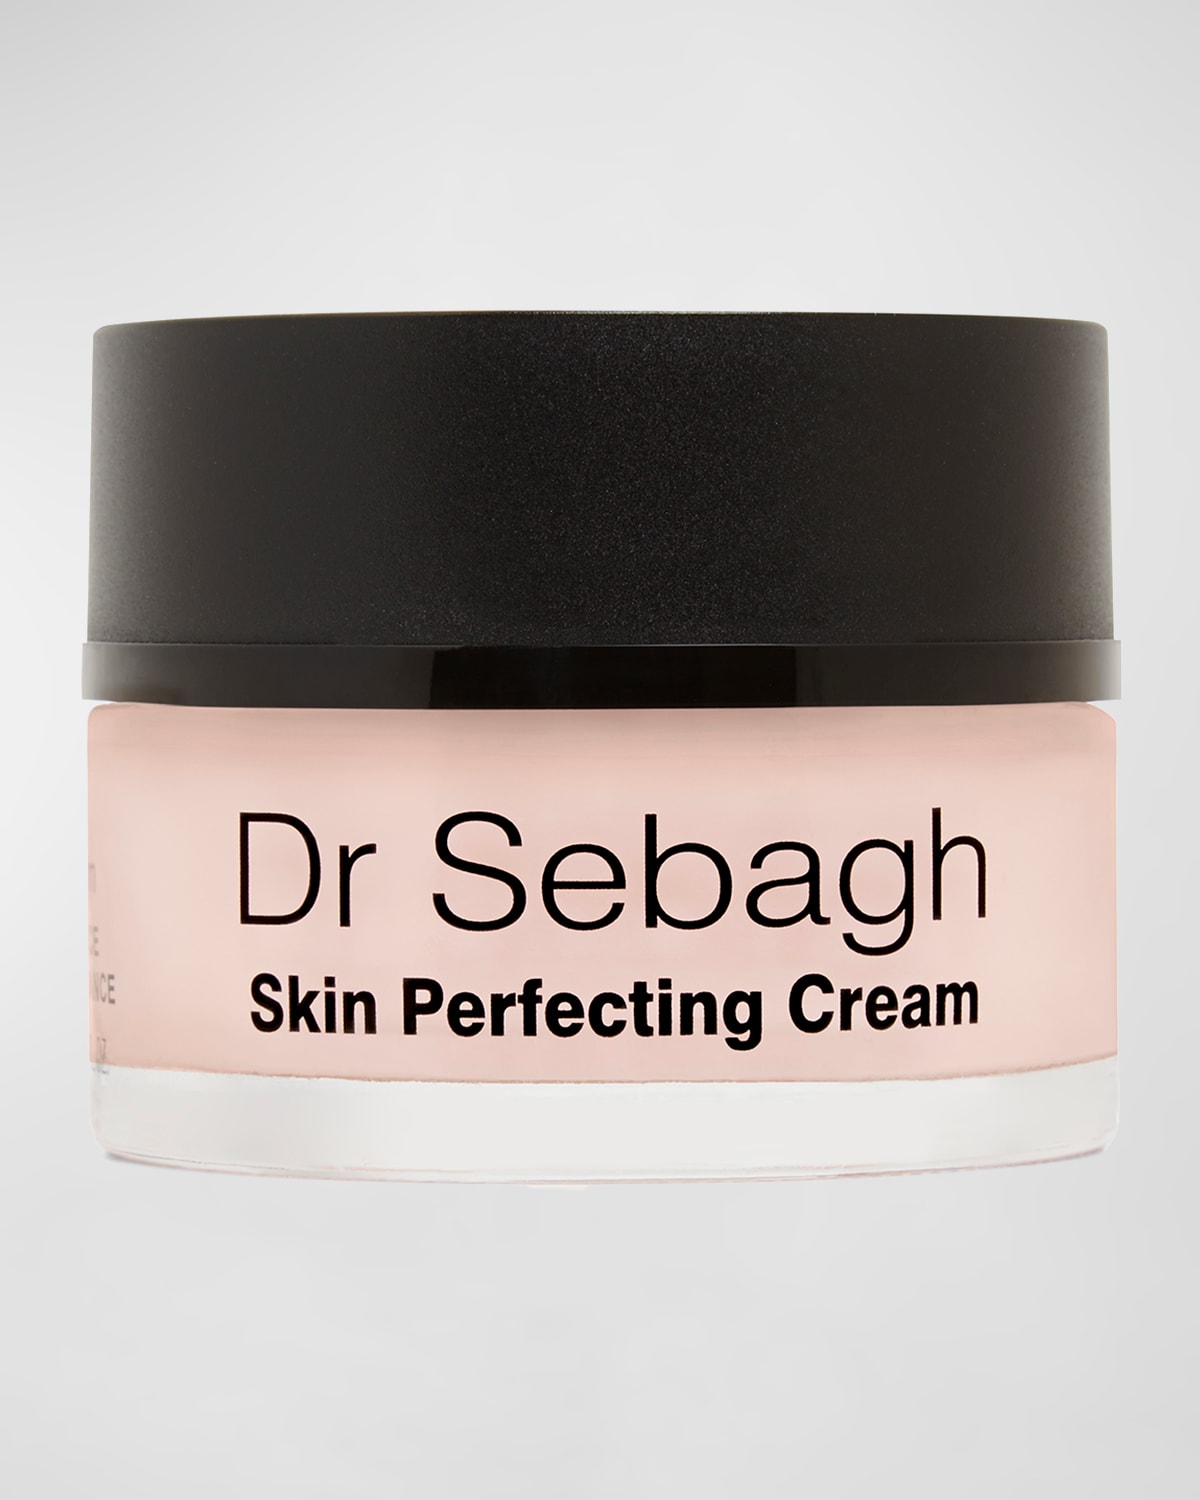 Dr Sebagh Skin Perfecting Cream, 1.7 oz.